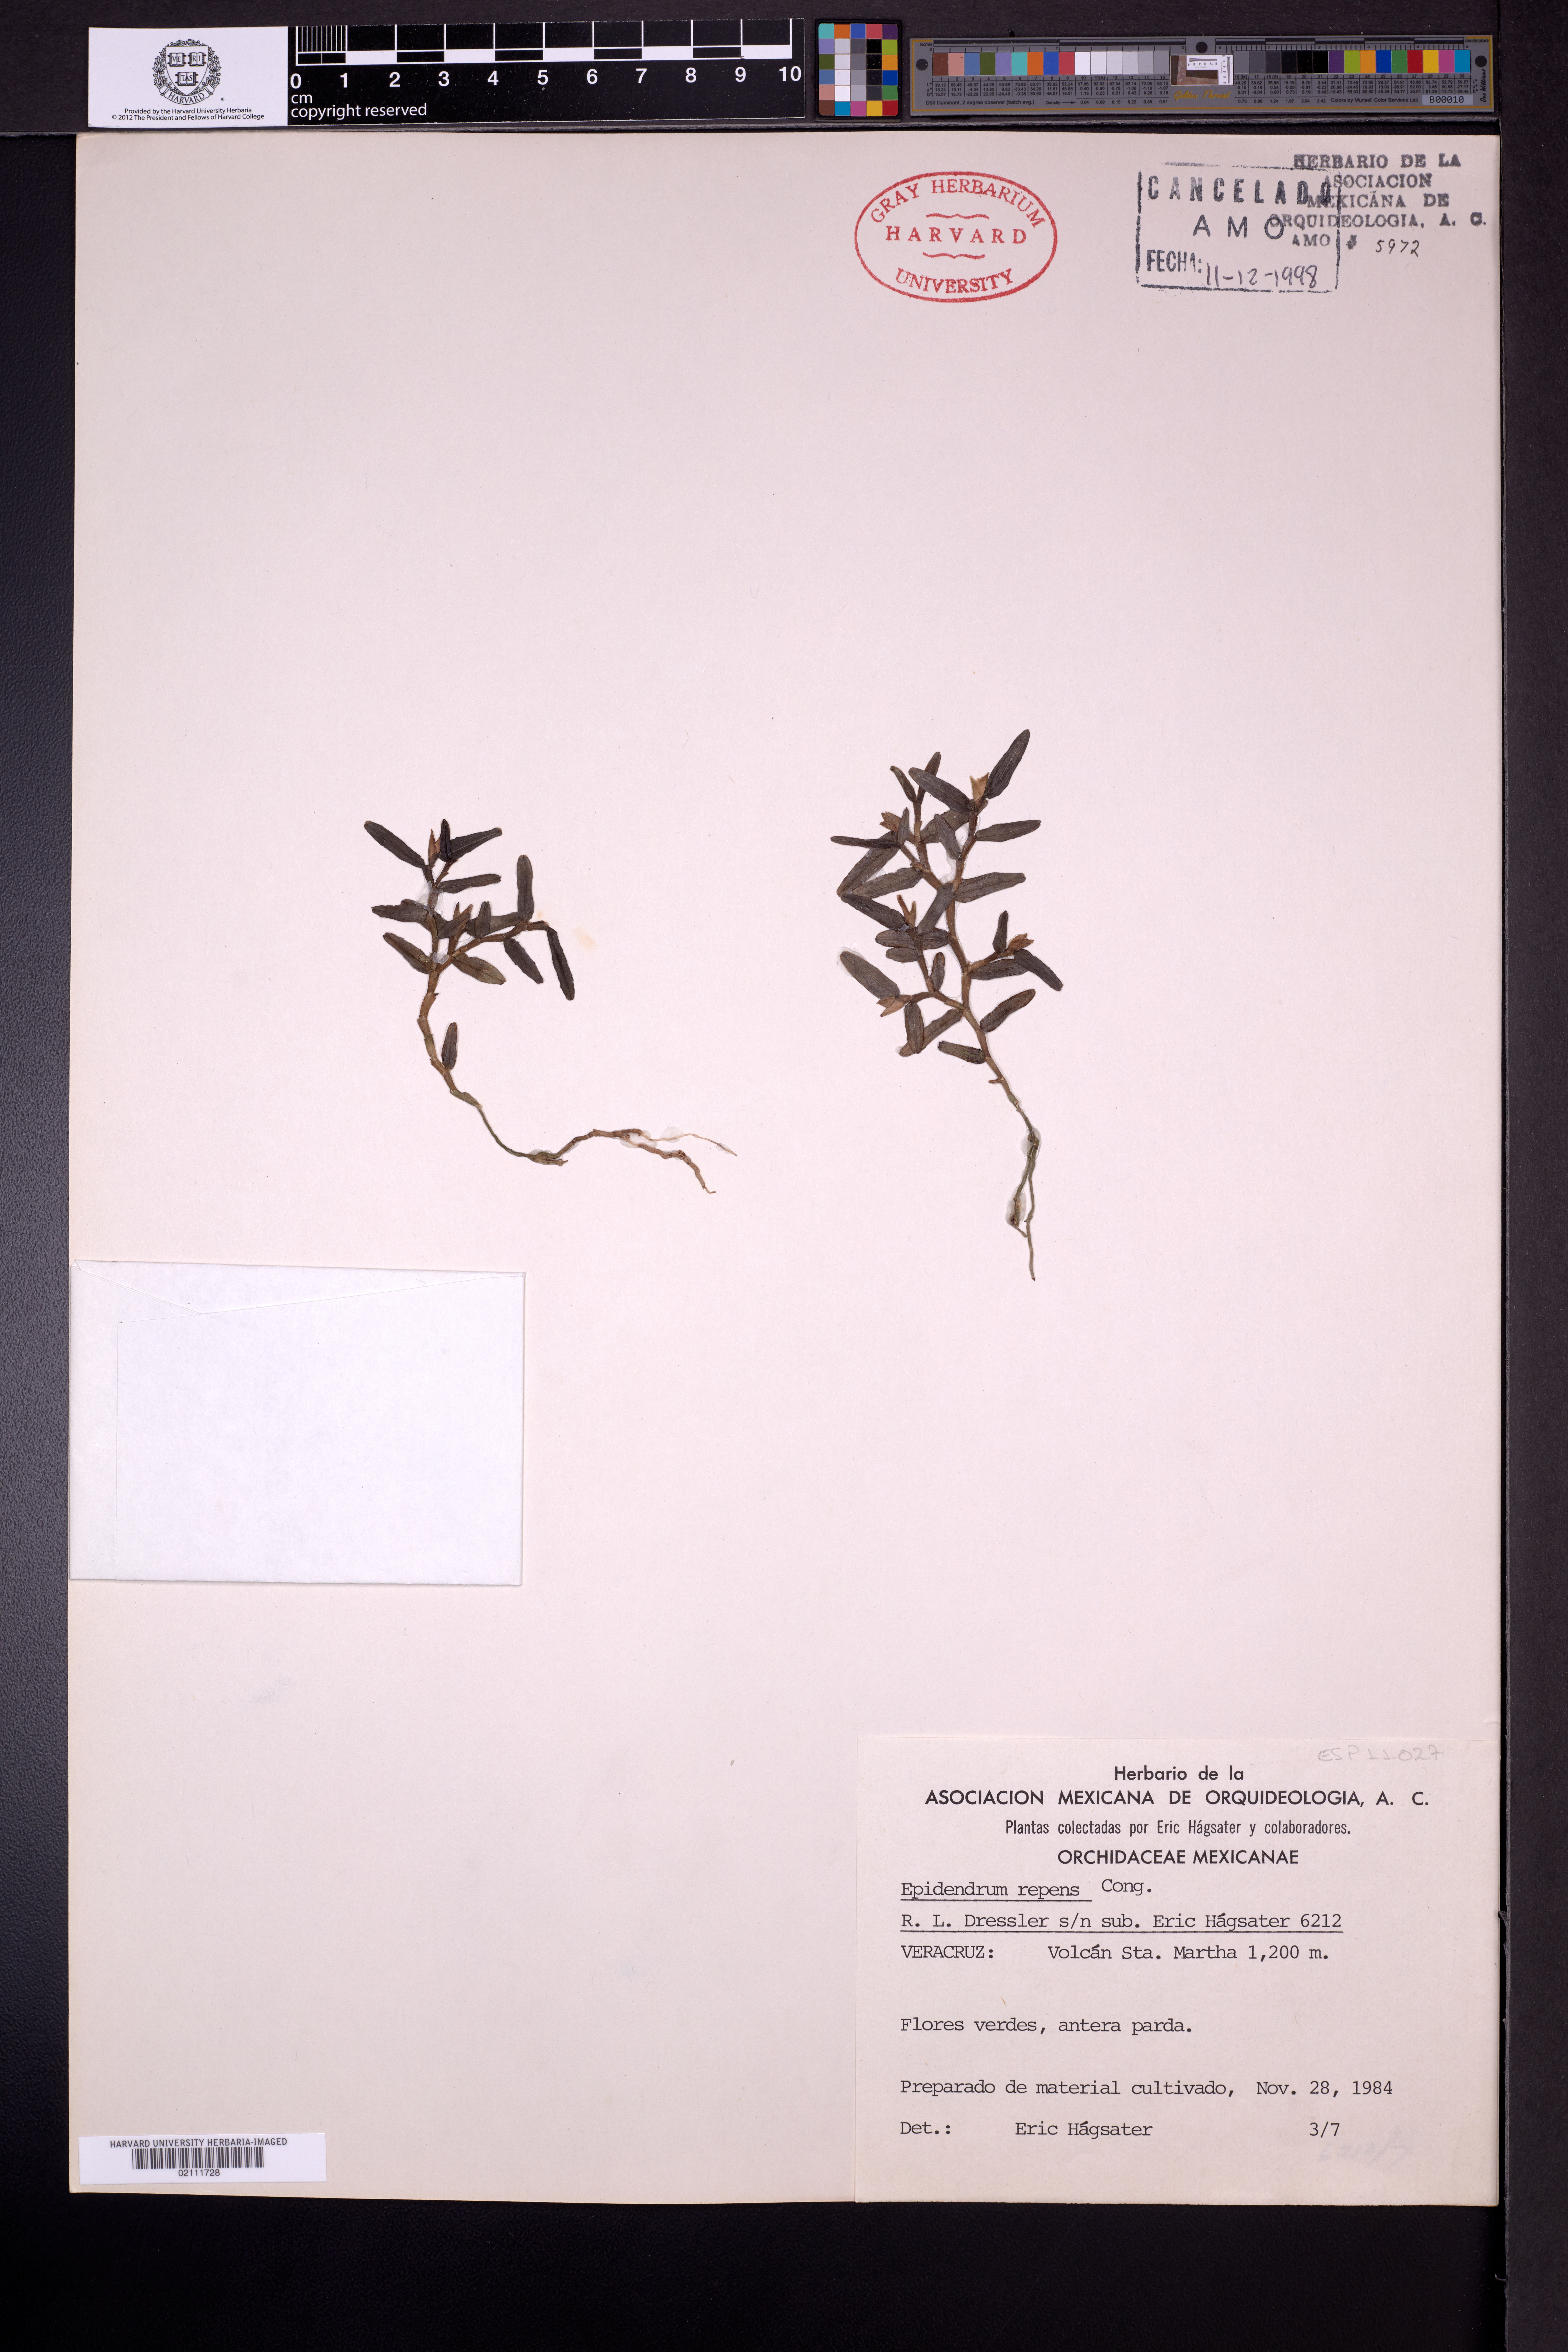 Epidendrum repens image